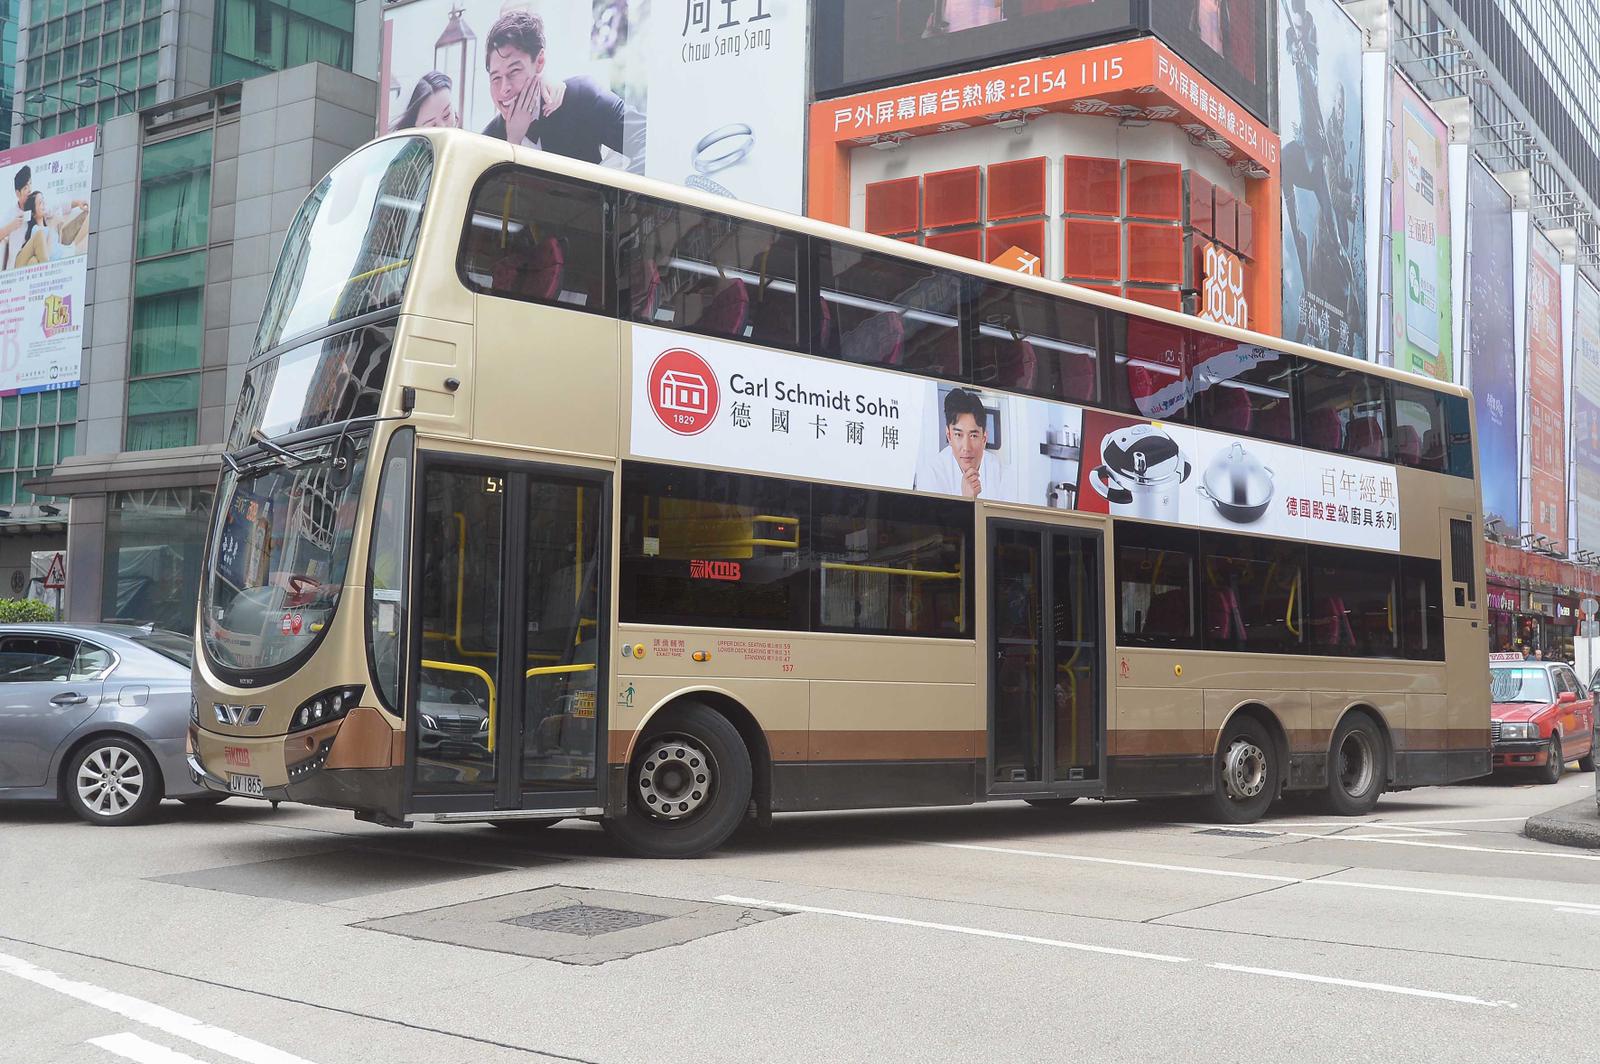 carl schmidt sohn hong kong bus advertisement